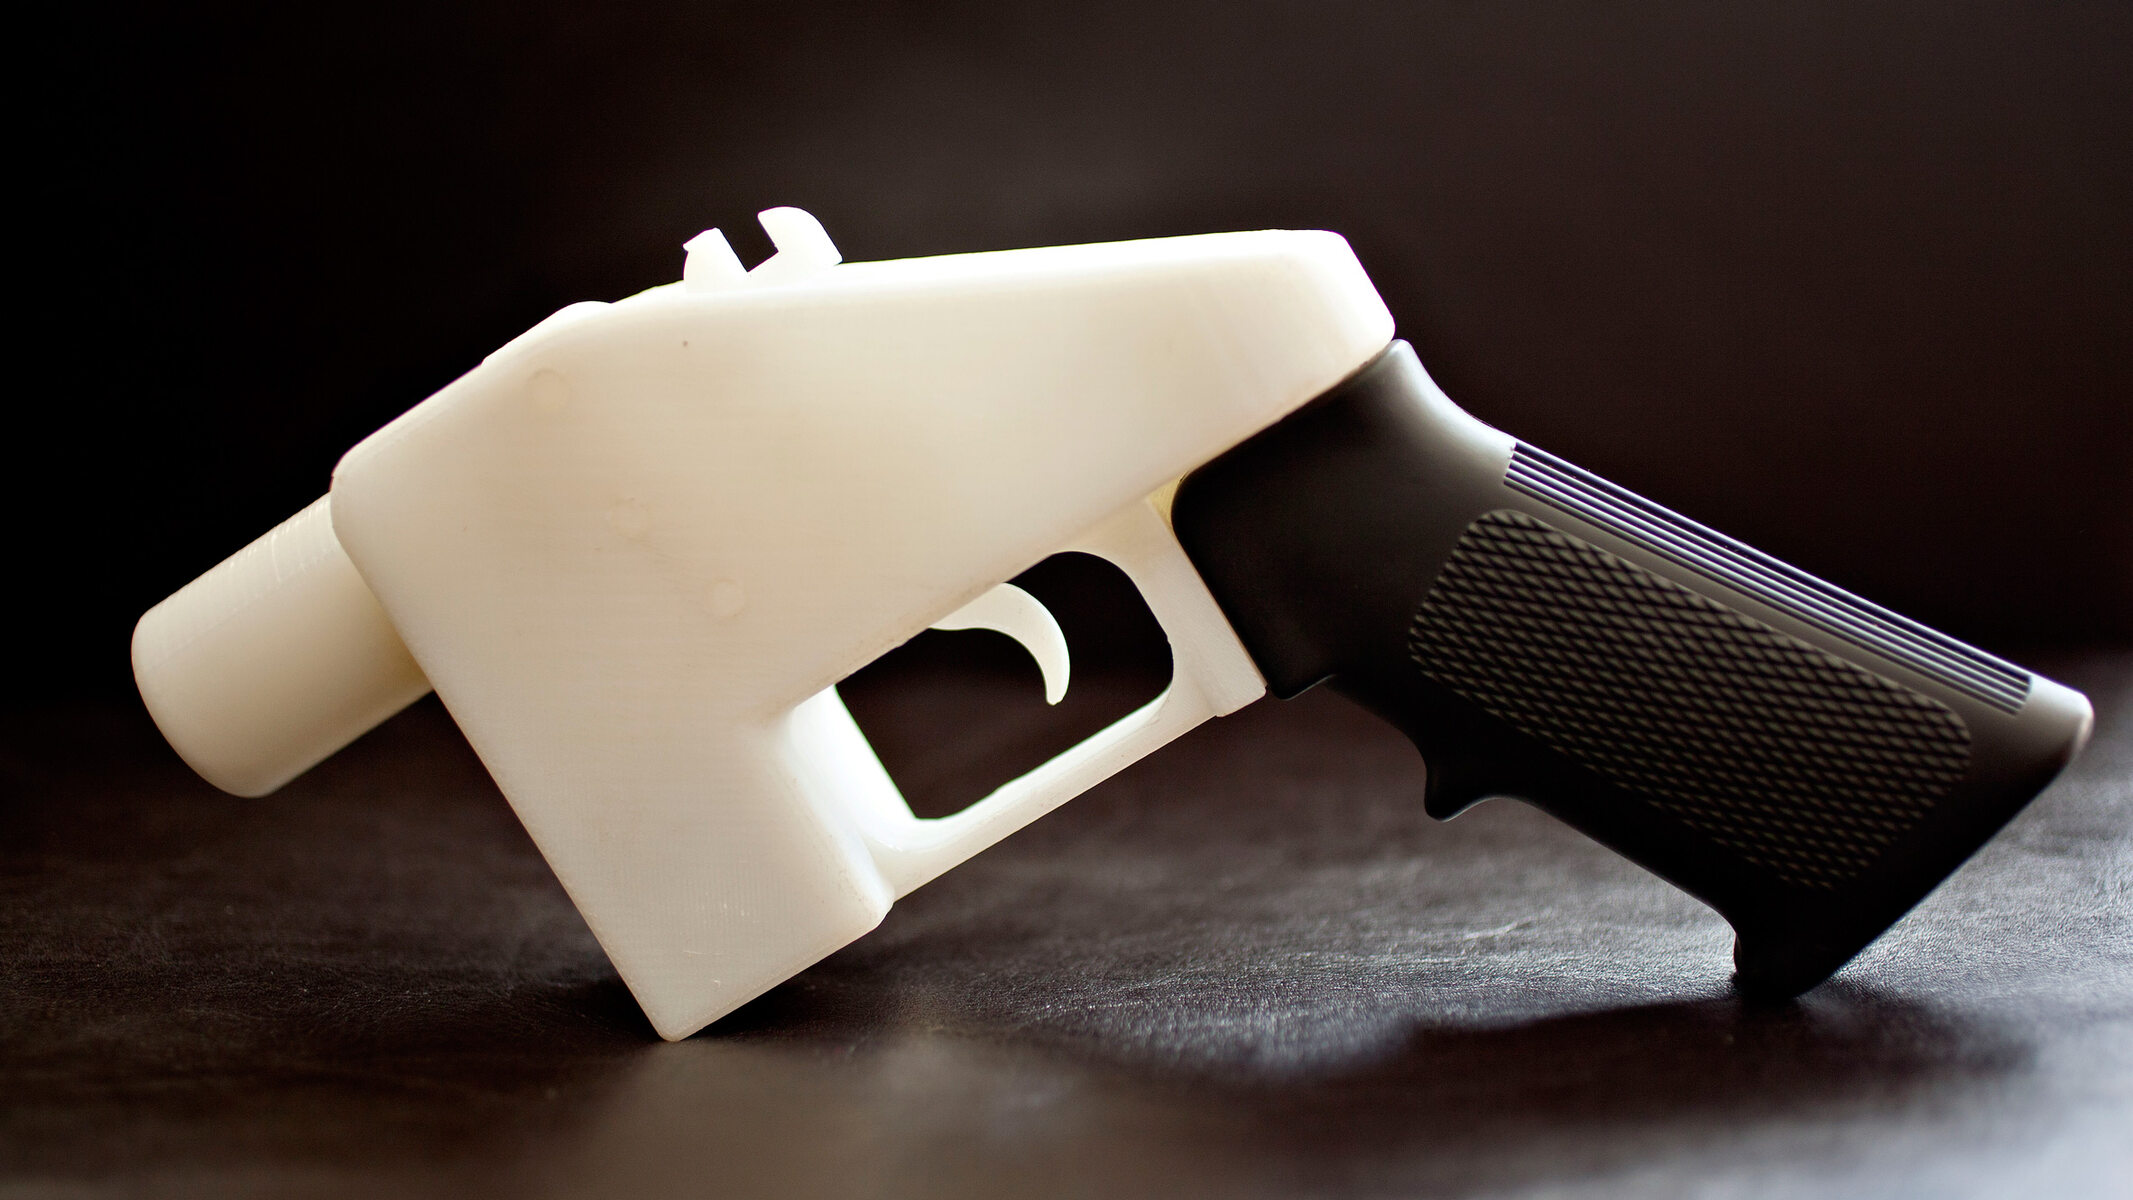 Blueprints: How To Make A Hand Gun With A 3D Printer